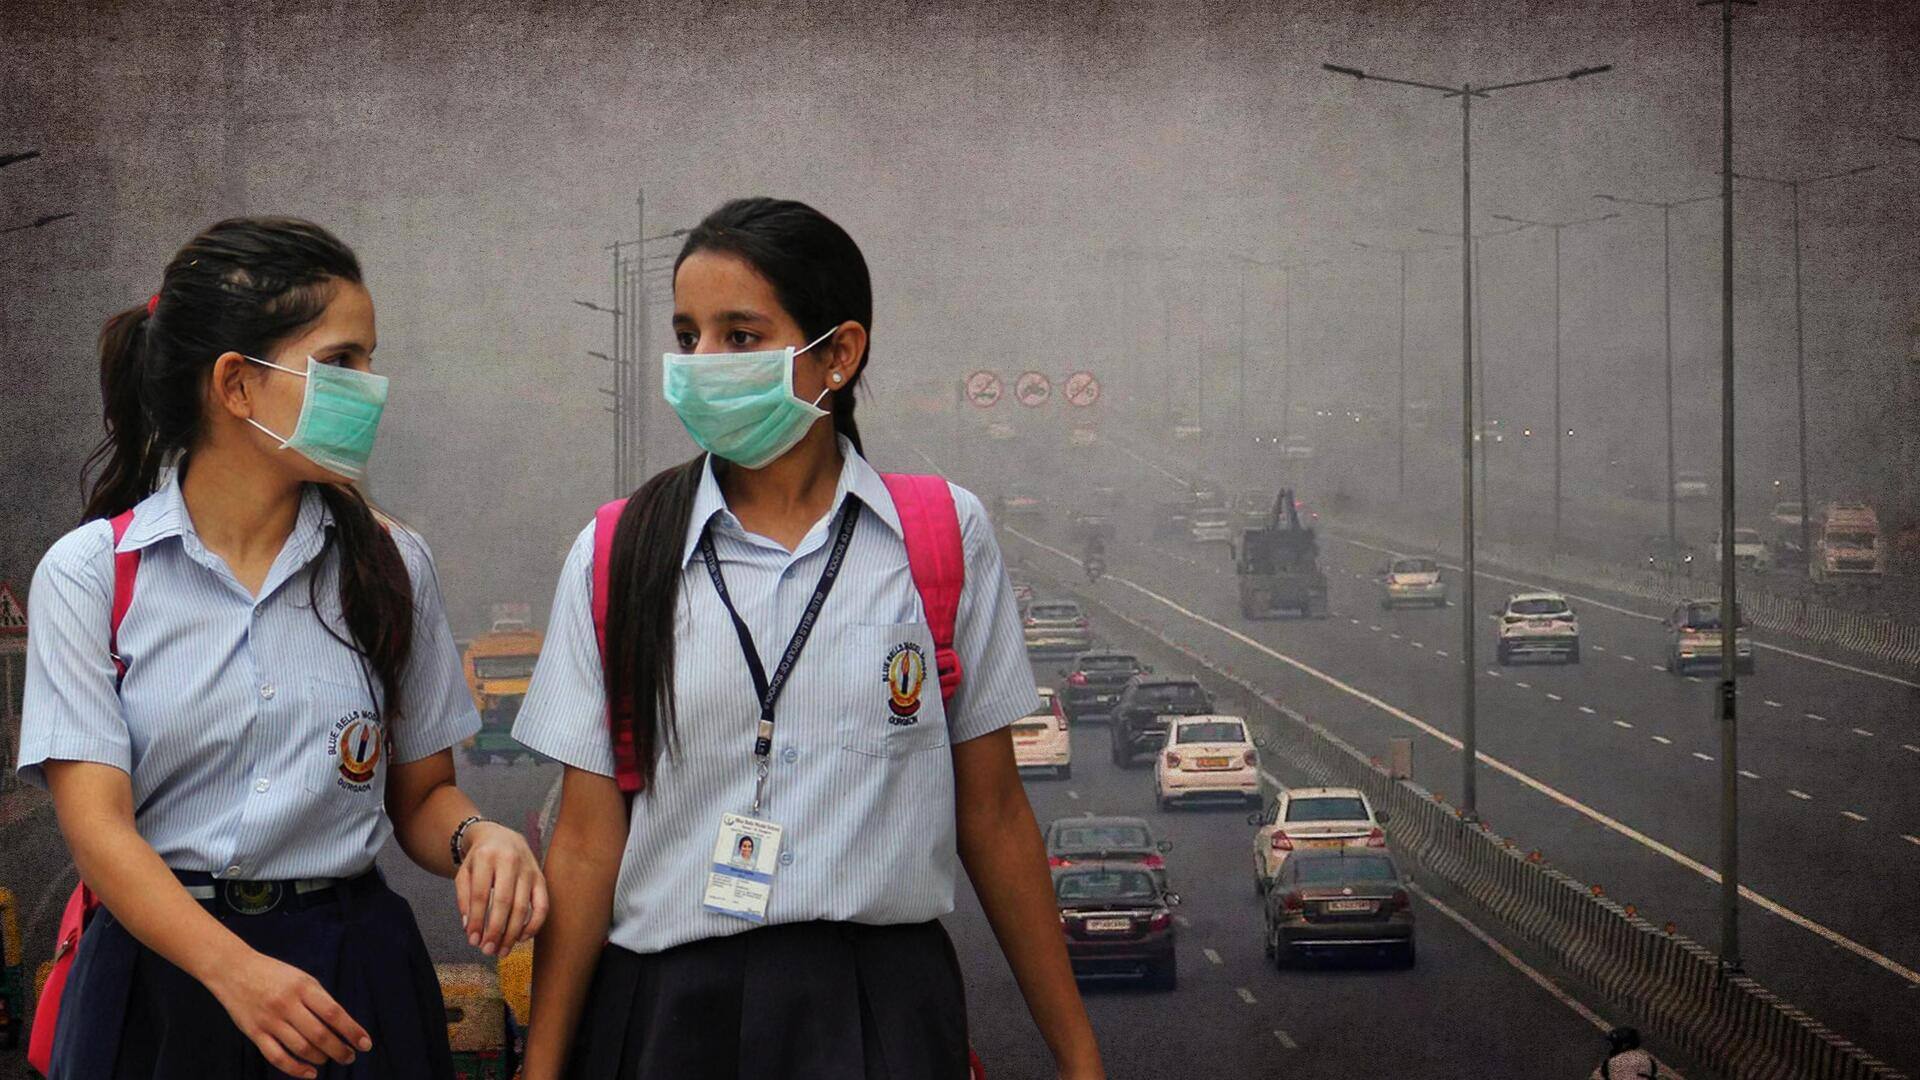 वायु प्रदूषण: दिल्ली में 13 से 20 नवंबर तक ऑड-ईवन व्यवस्था रहेगी लागू, स्कूल रहेंगे बंद